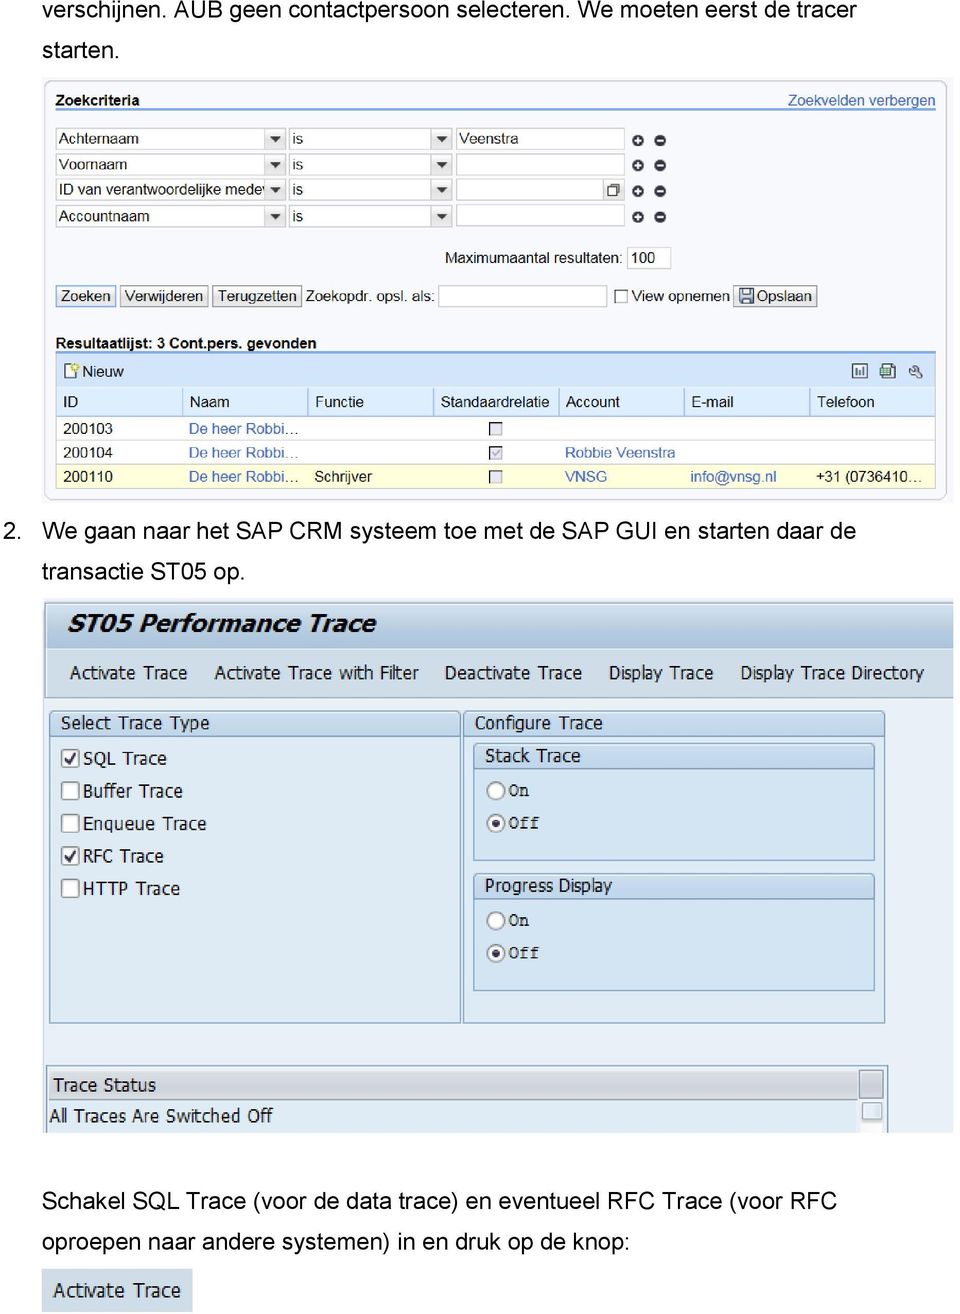 We gaan naar het SAP CRM systeem toe met de SAP GUI en starten daar de